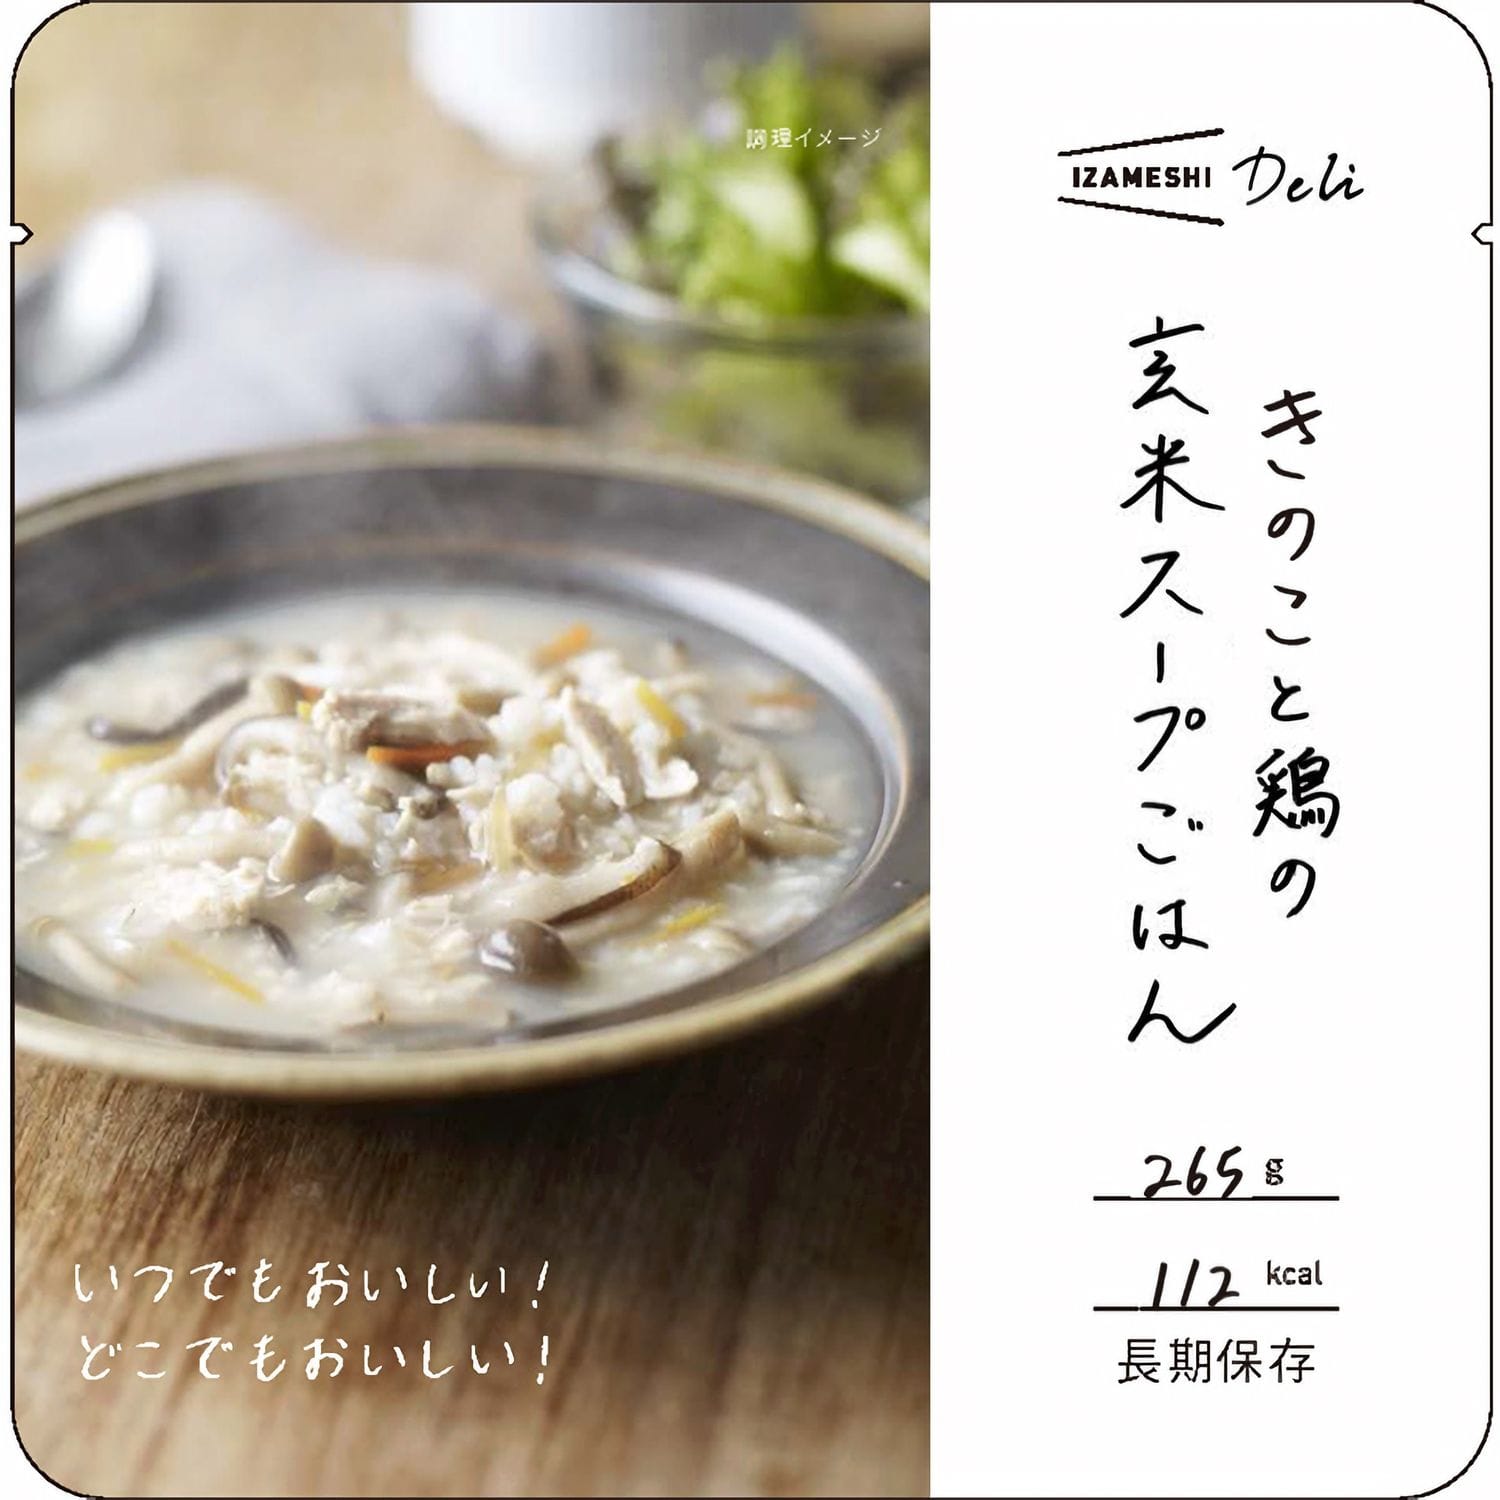 【防災】グルメ 食品 ベルメゾン スープセット